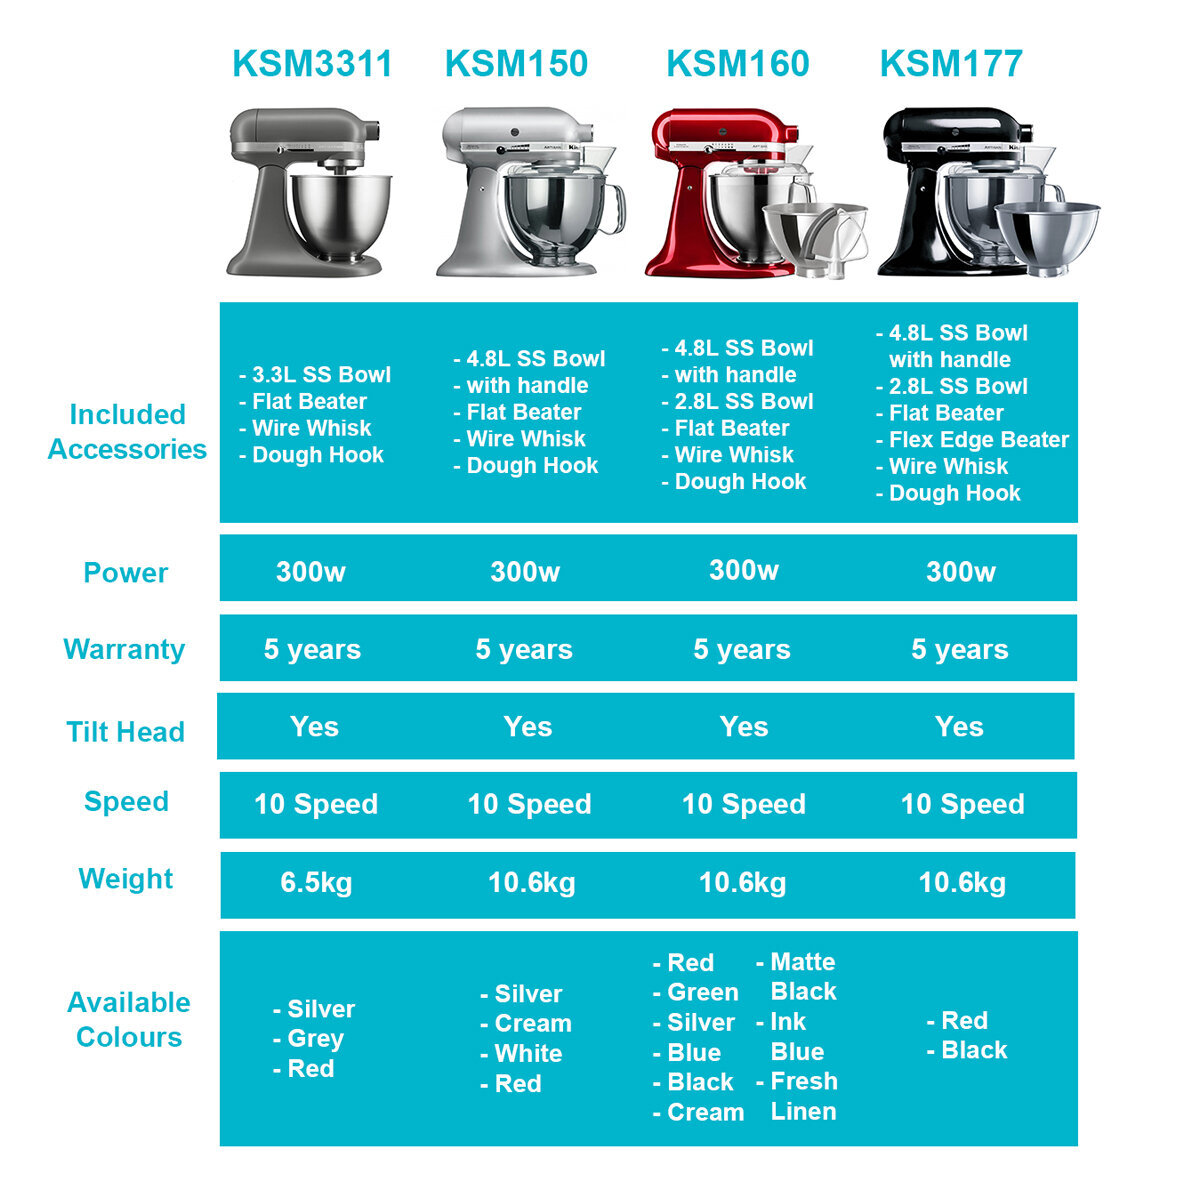 KitchenAid Mixer Comparison Guide